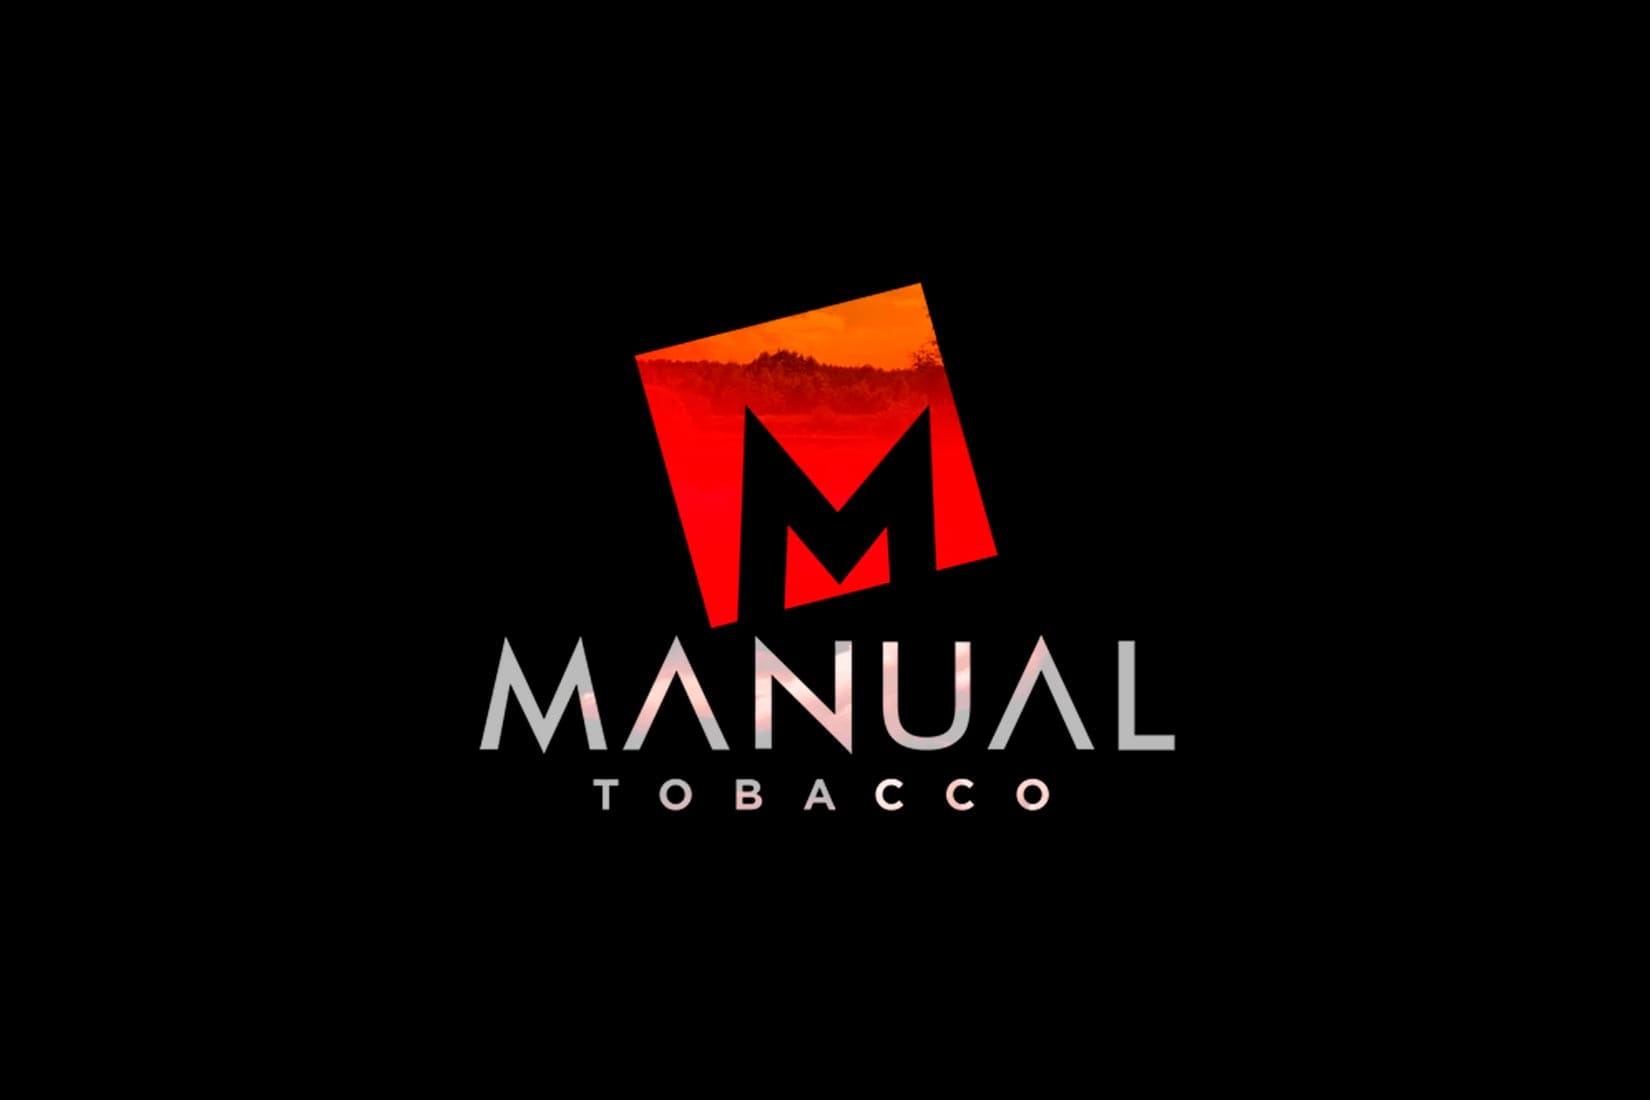 Табак для кальяна MANUAL TOBACCO: описание, вкусы, миксы, отзывы